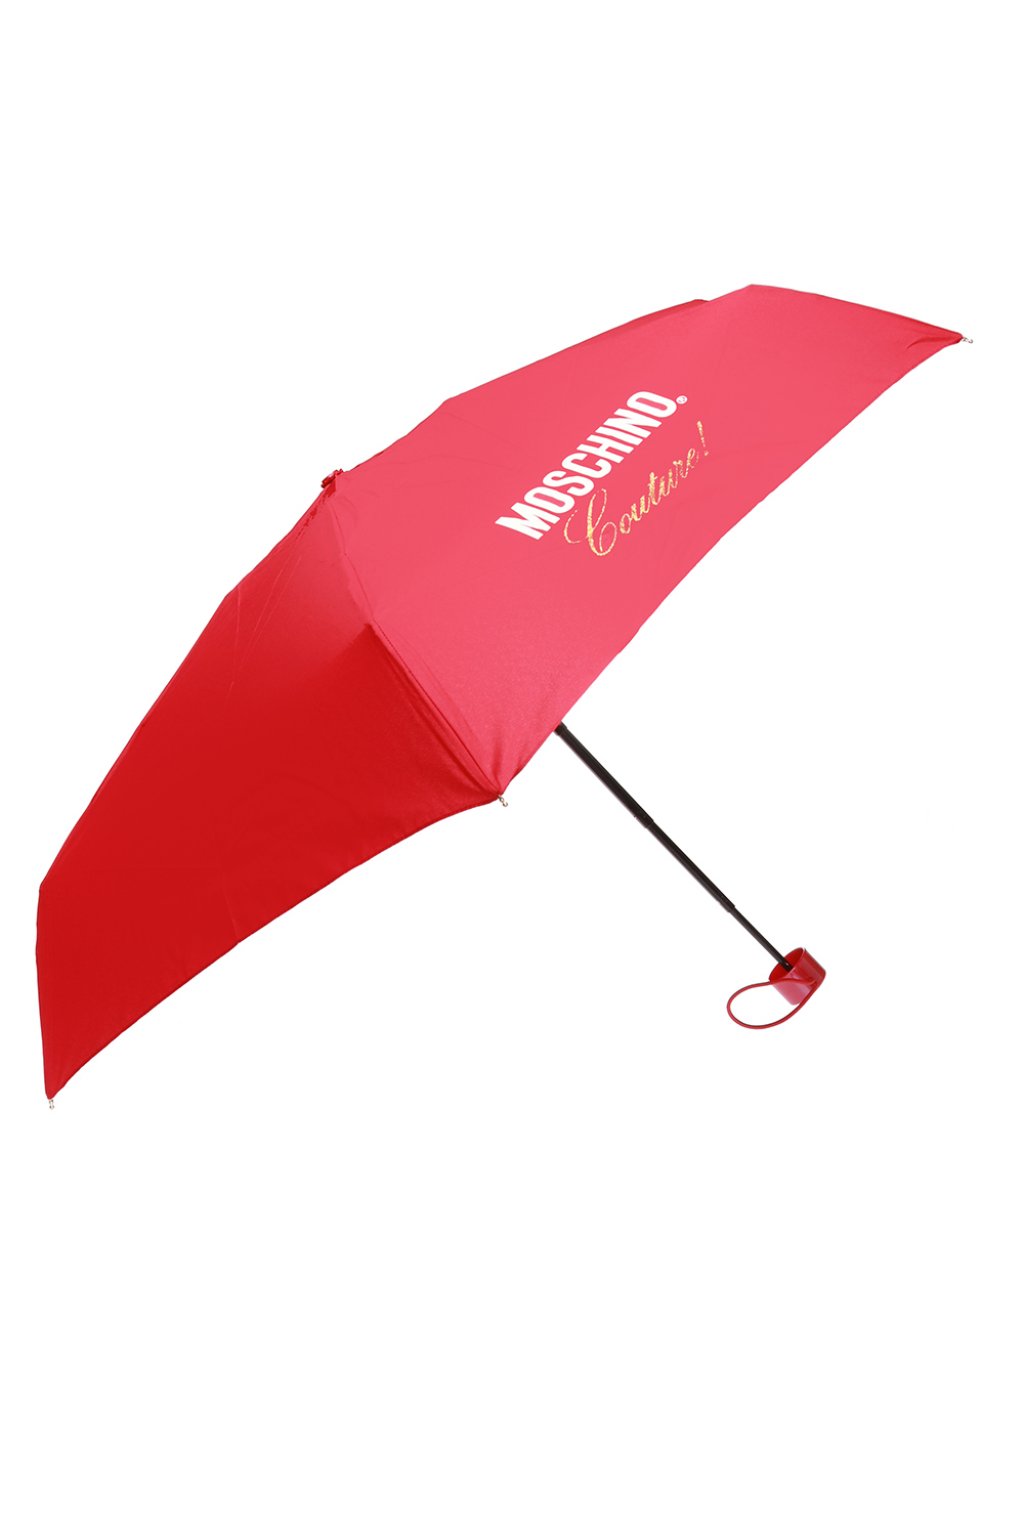 Moschino Wzorzysty parasol